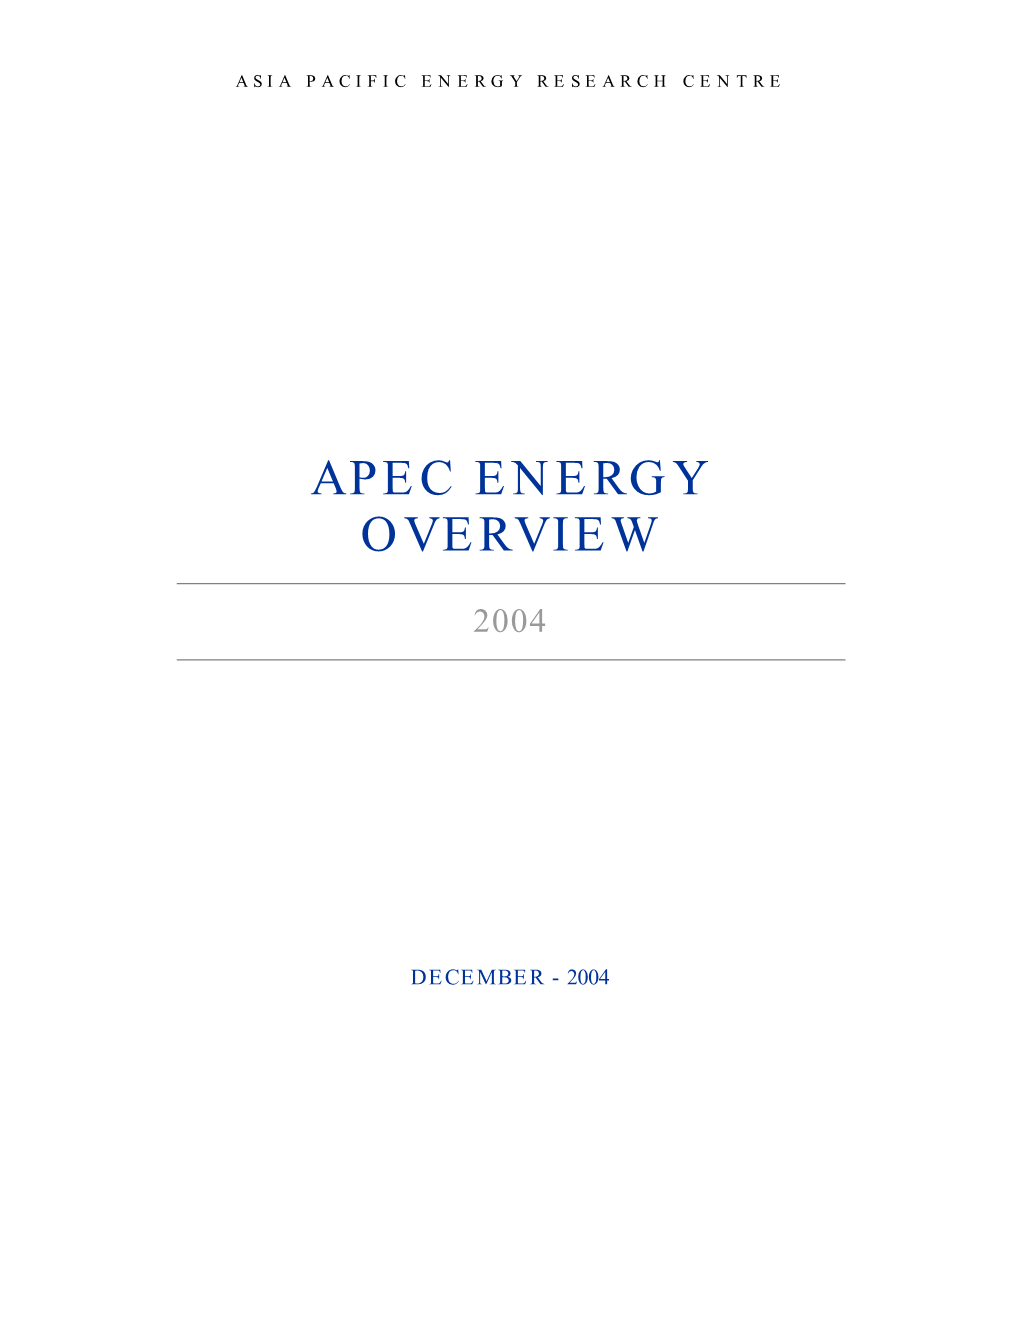 APEC Energy Overview 2004